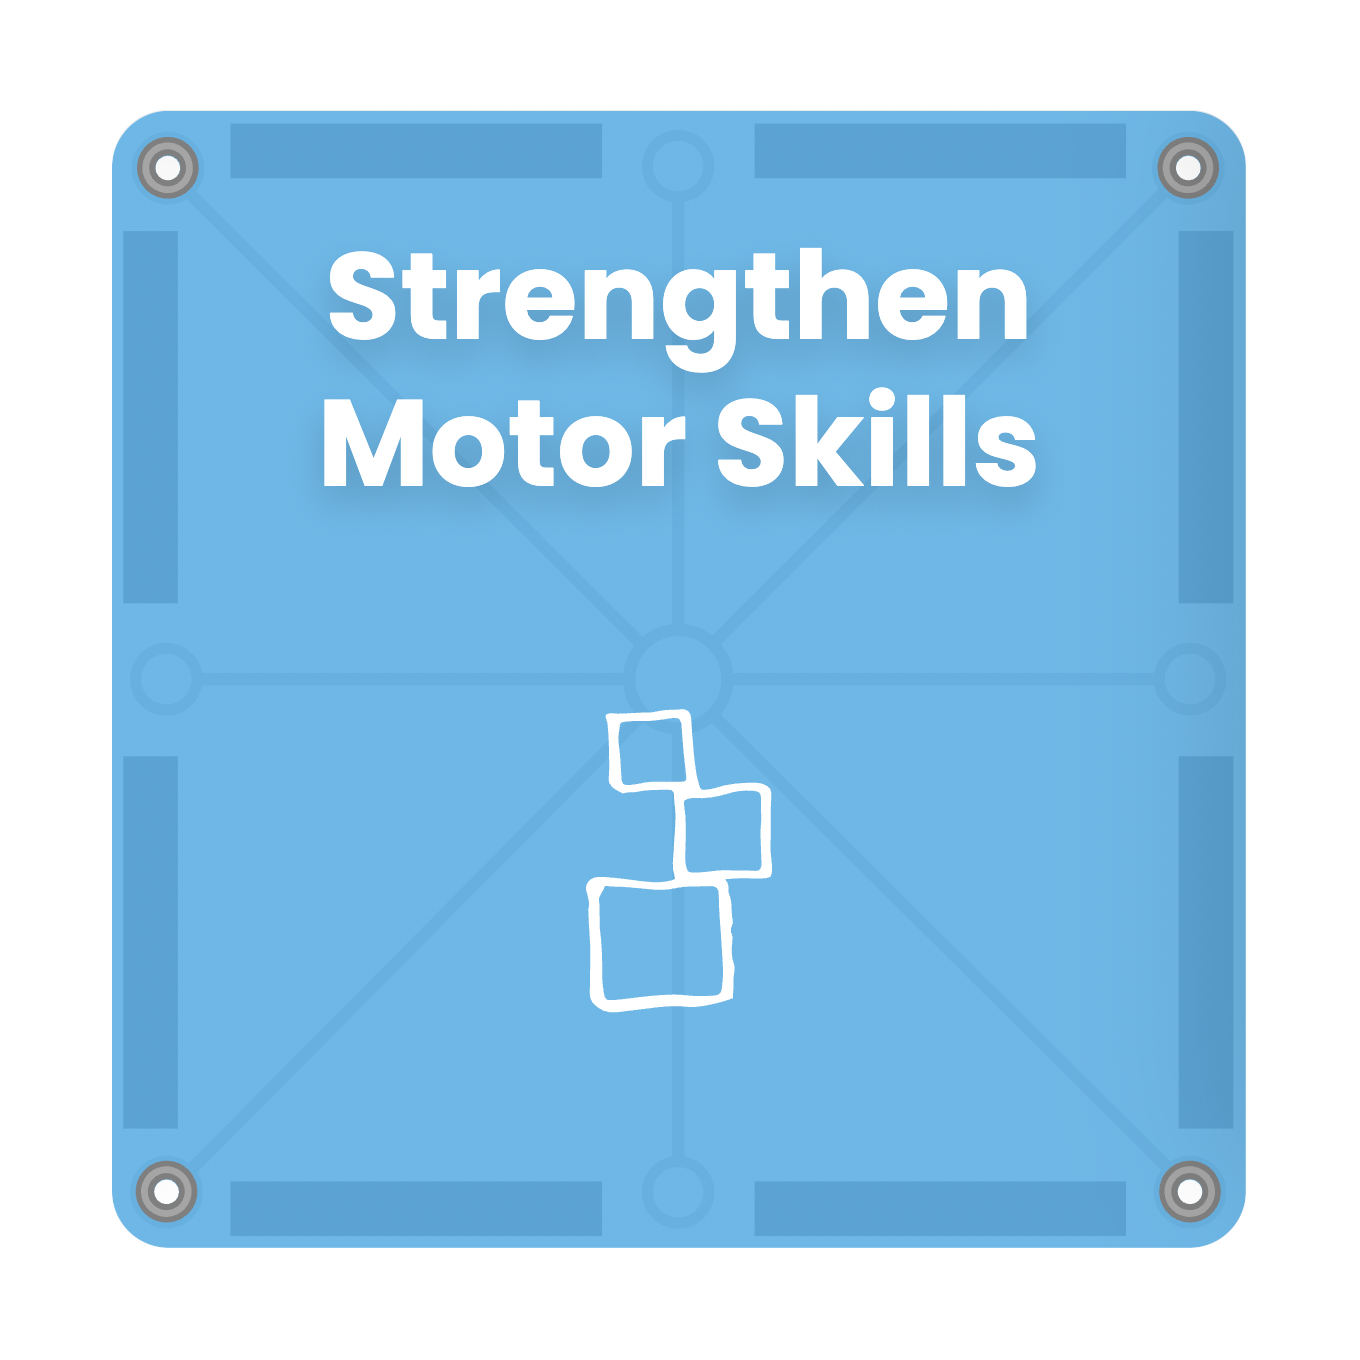 Strengthen Motor Skills